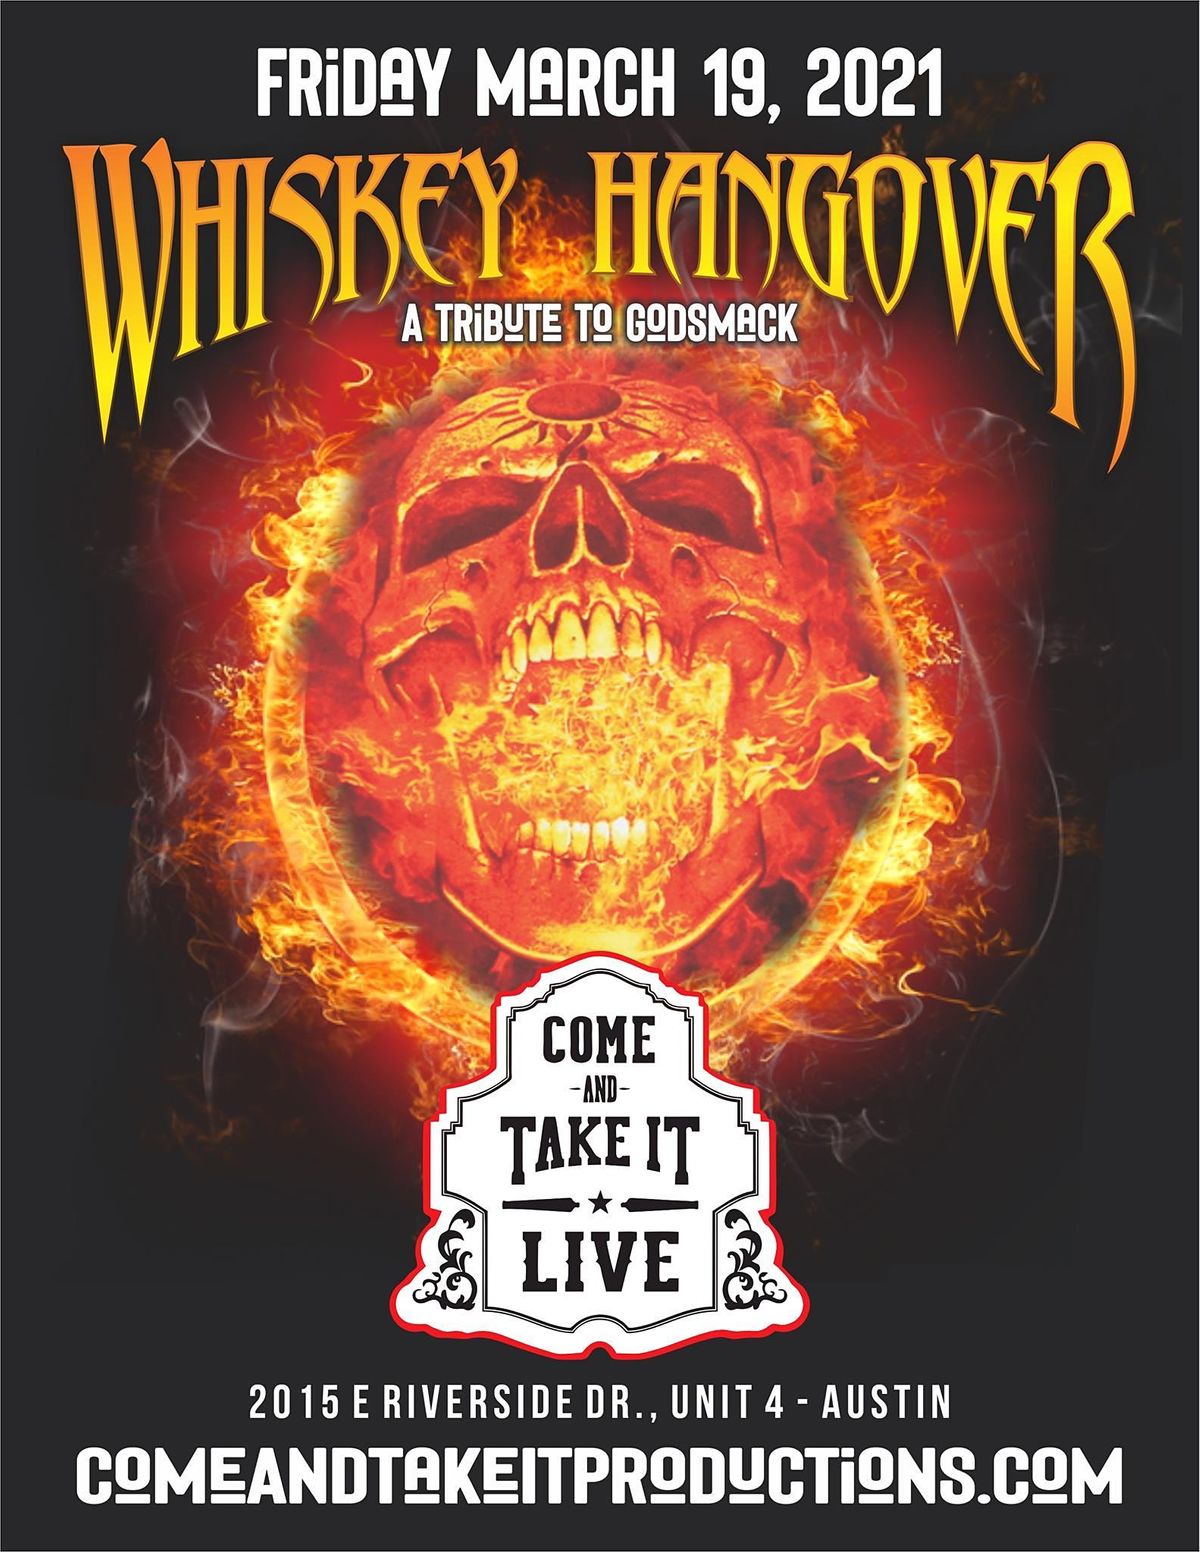 WHISKEY HANGOVER (Godsmack Tribute)